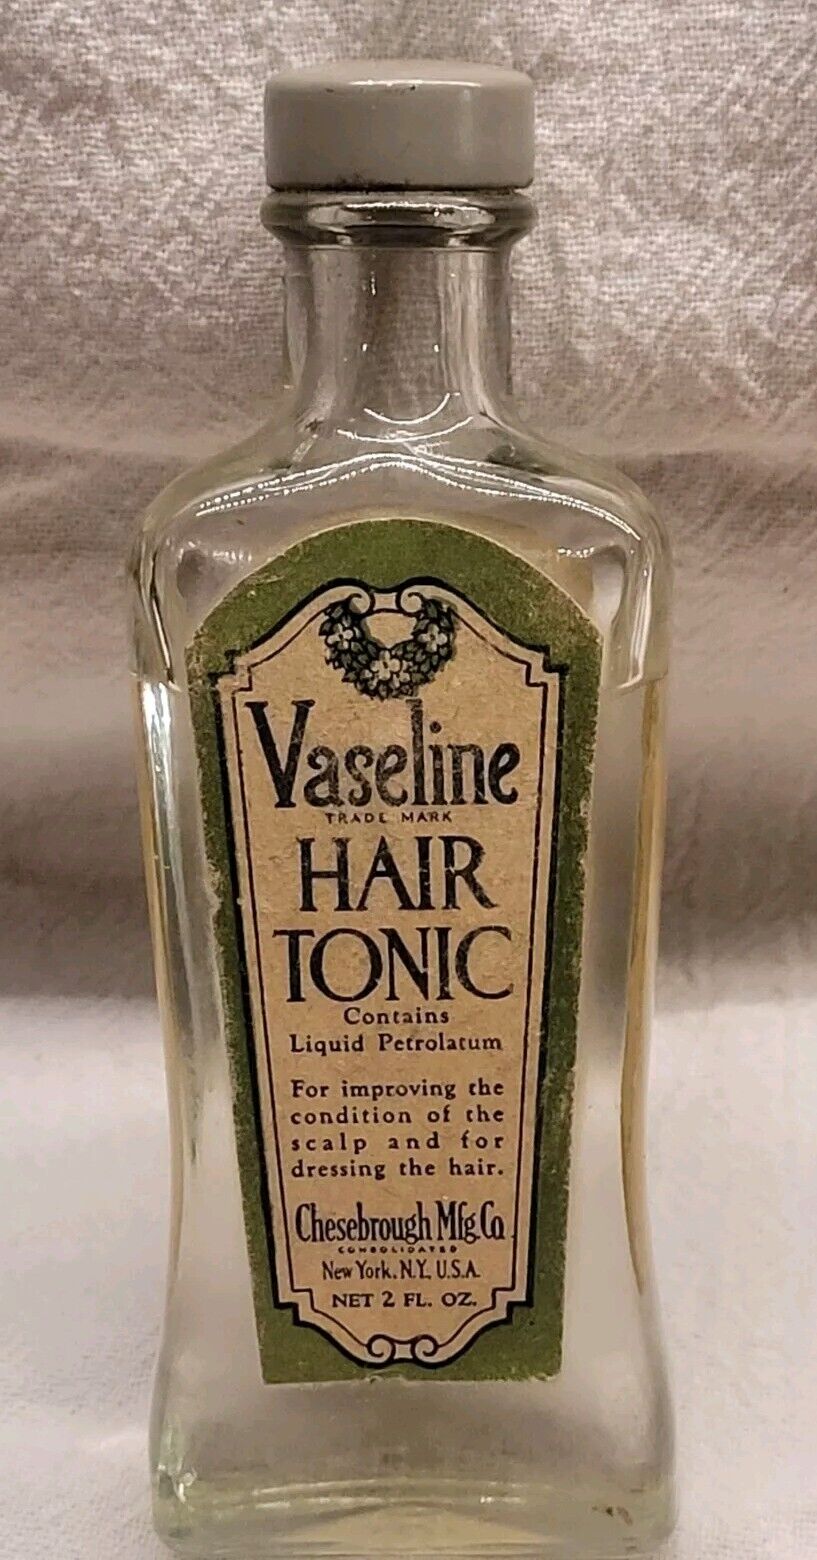 OLD VASELINE HAIR TONIC GLASS BOTTLE W ORIGINAL LABELS BARBER SHOP ADVERTISING